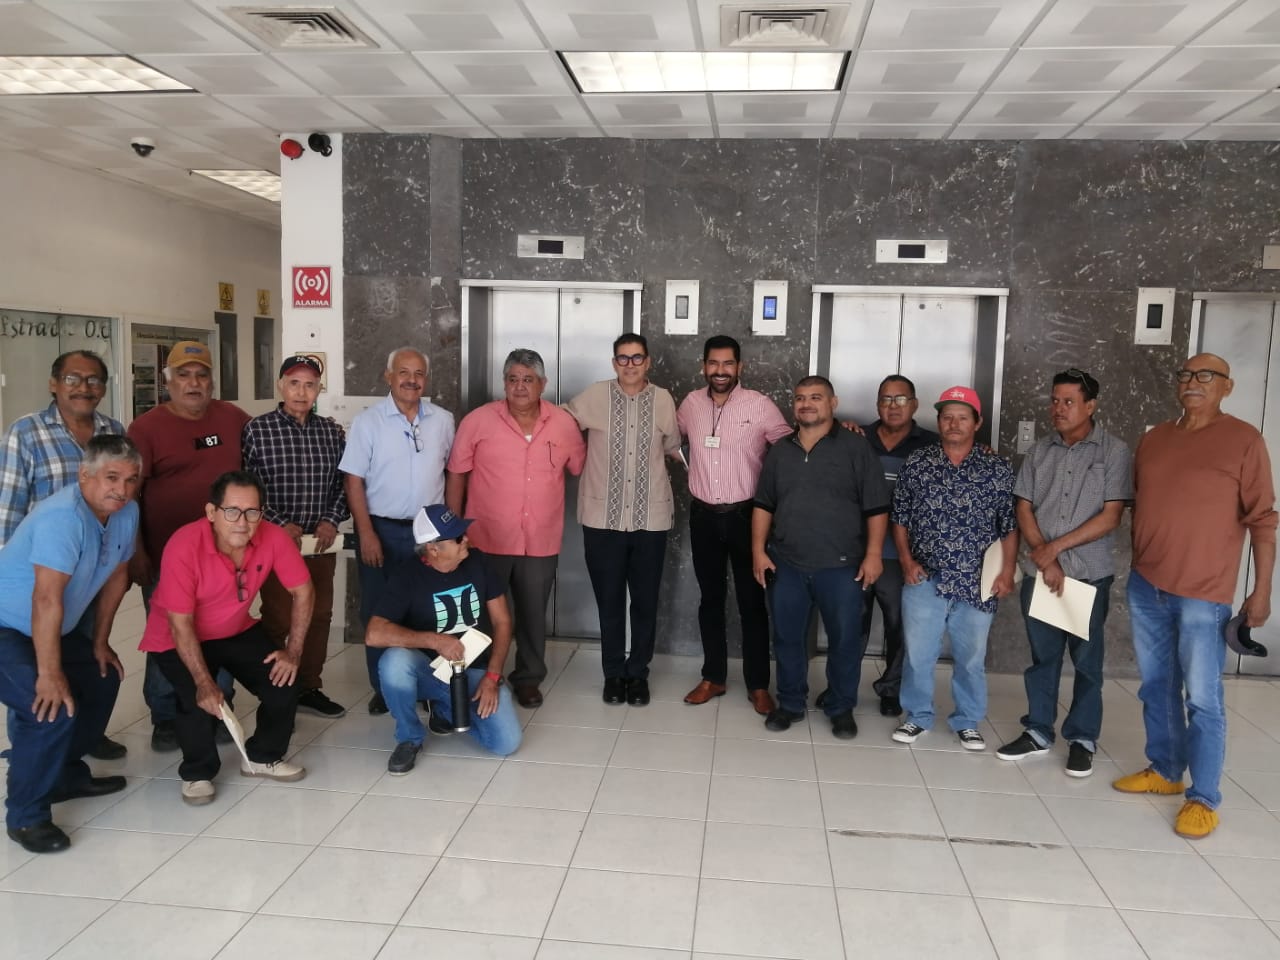 El Presidente de la Comisión de Pesca en el Congreso del Estado, Diputado Juan Carlos Patrón, convocó esta mañana a una reunión de trabajo entre autoridades de CONAPESCA y representantes de la Federación de Cooperativas Pesqueras de Mazatlán.